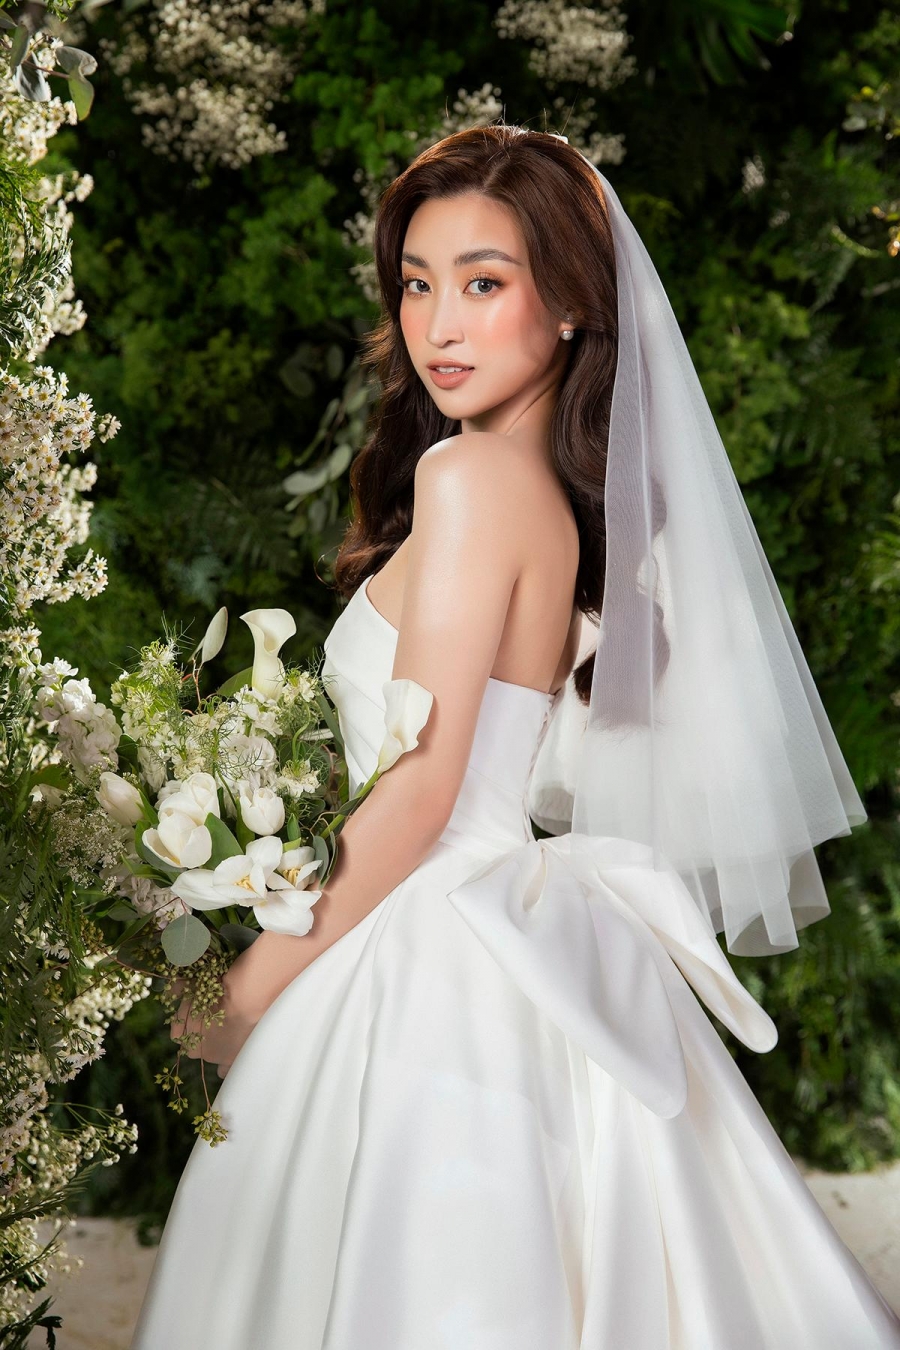 Đỗ Mỹ Linh chưa bao giờ khiến fan thất vọng mỗi khi hoá thân thành cô dâu.